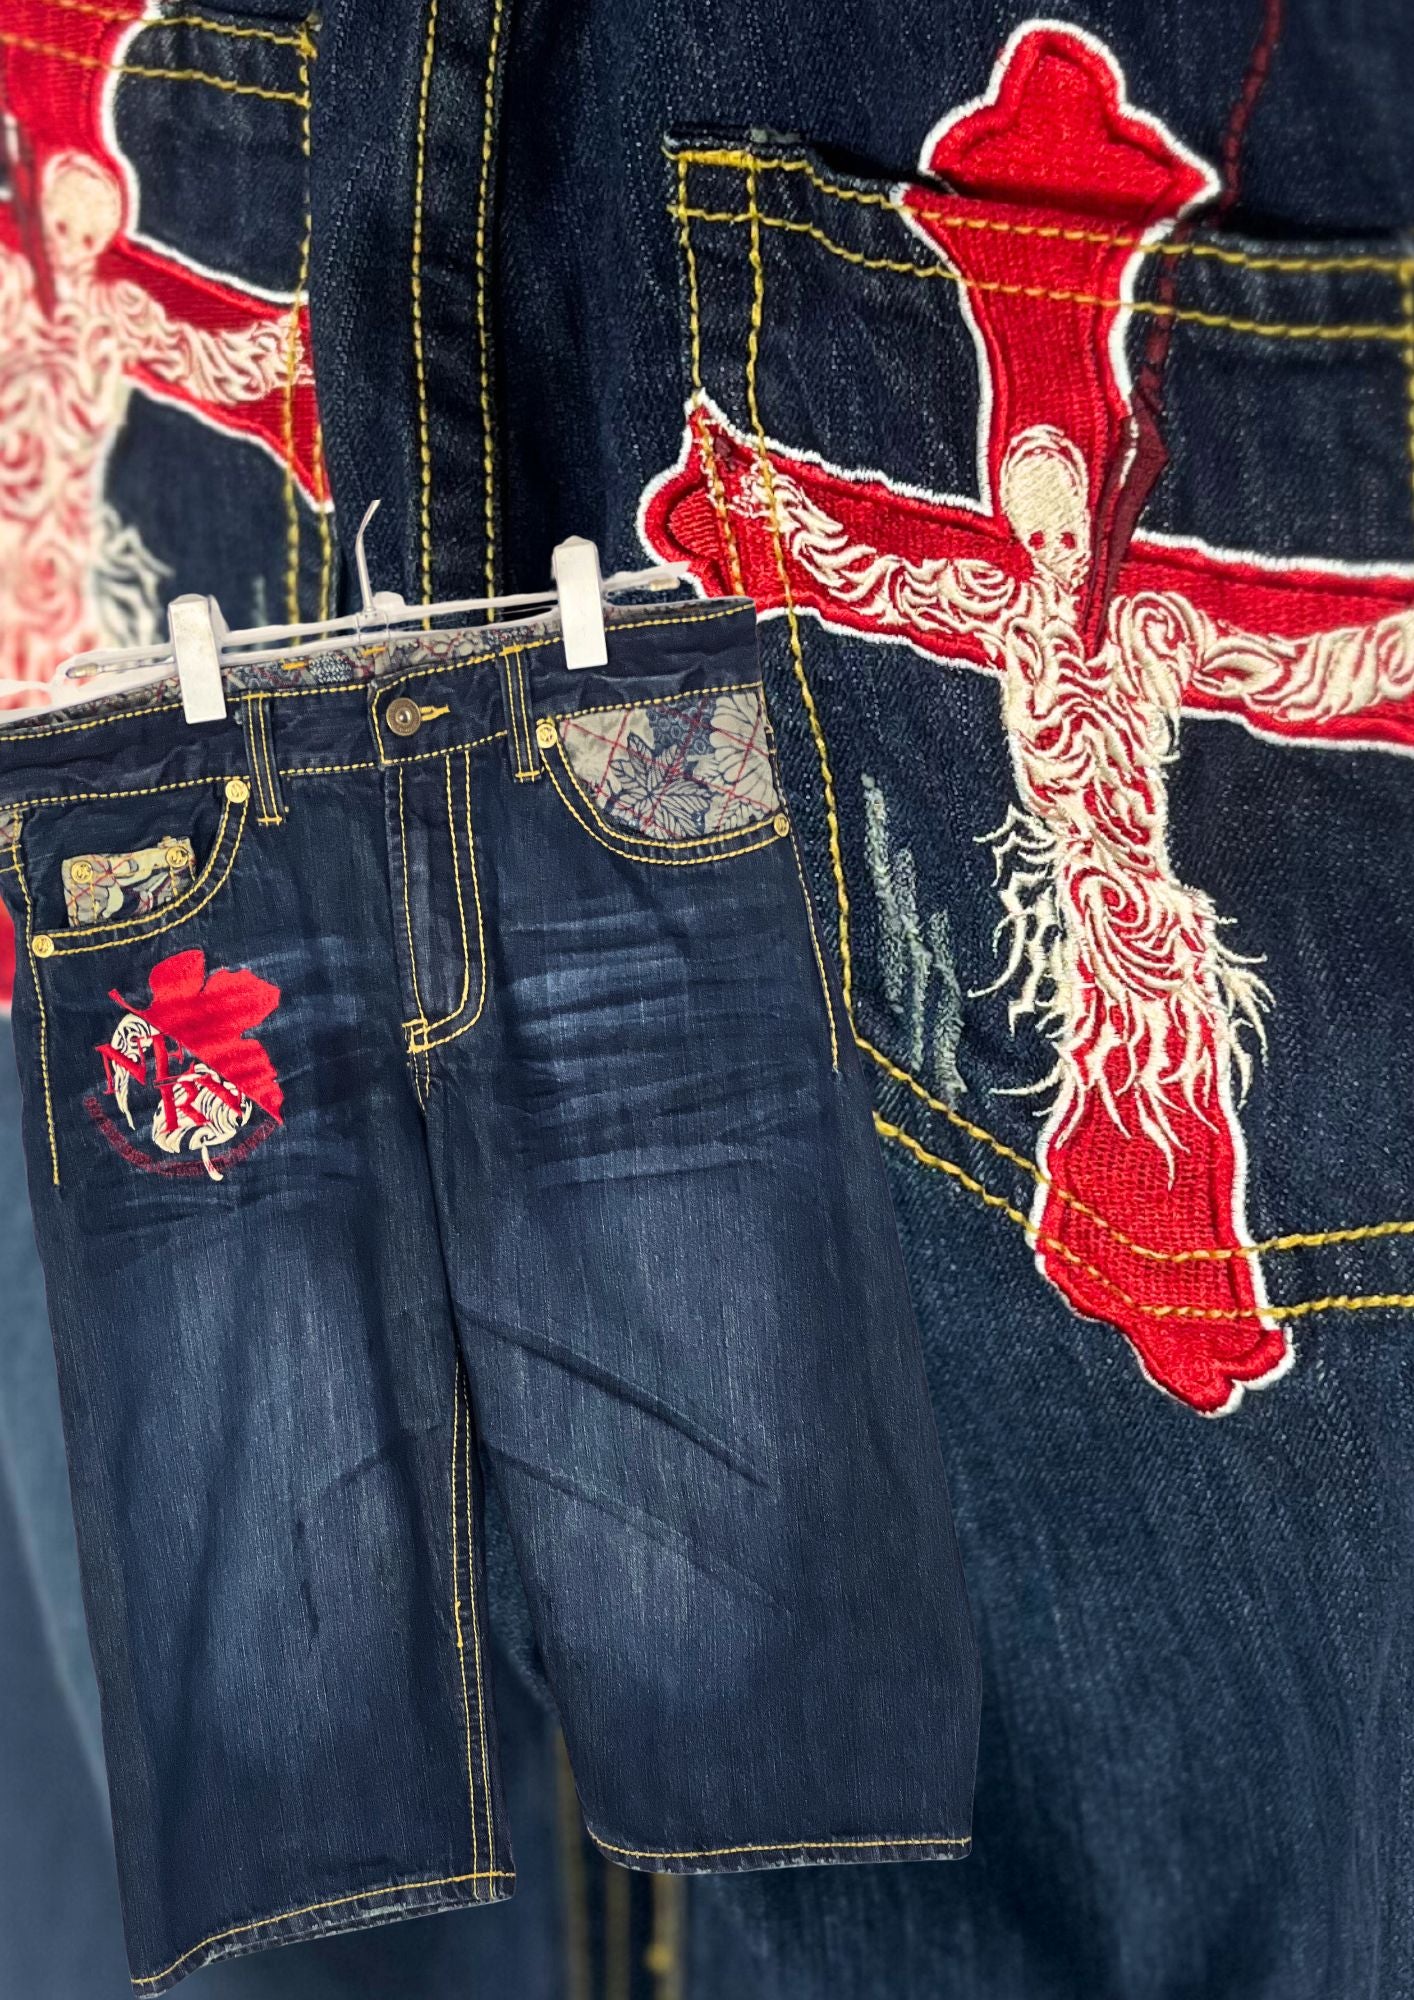 2010s Neon Genesis Evangelion x Nishiki Embroidered Lilith Half Denim Jeans